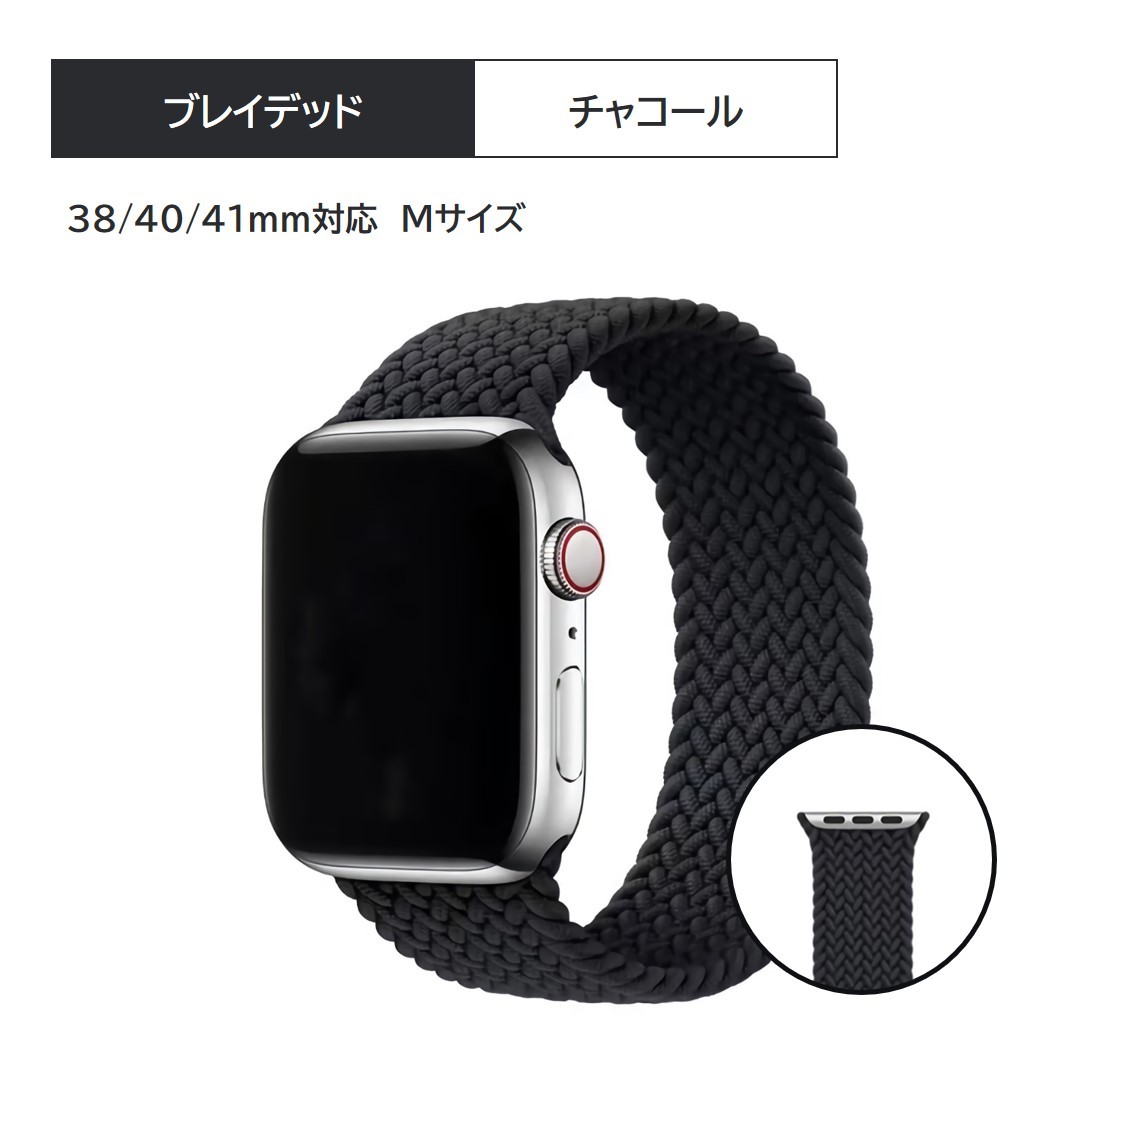 日本人気超絶の Apple Watch ブレイデッドソロ ブラウンS 38 40 41